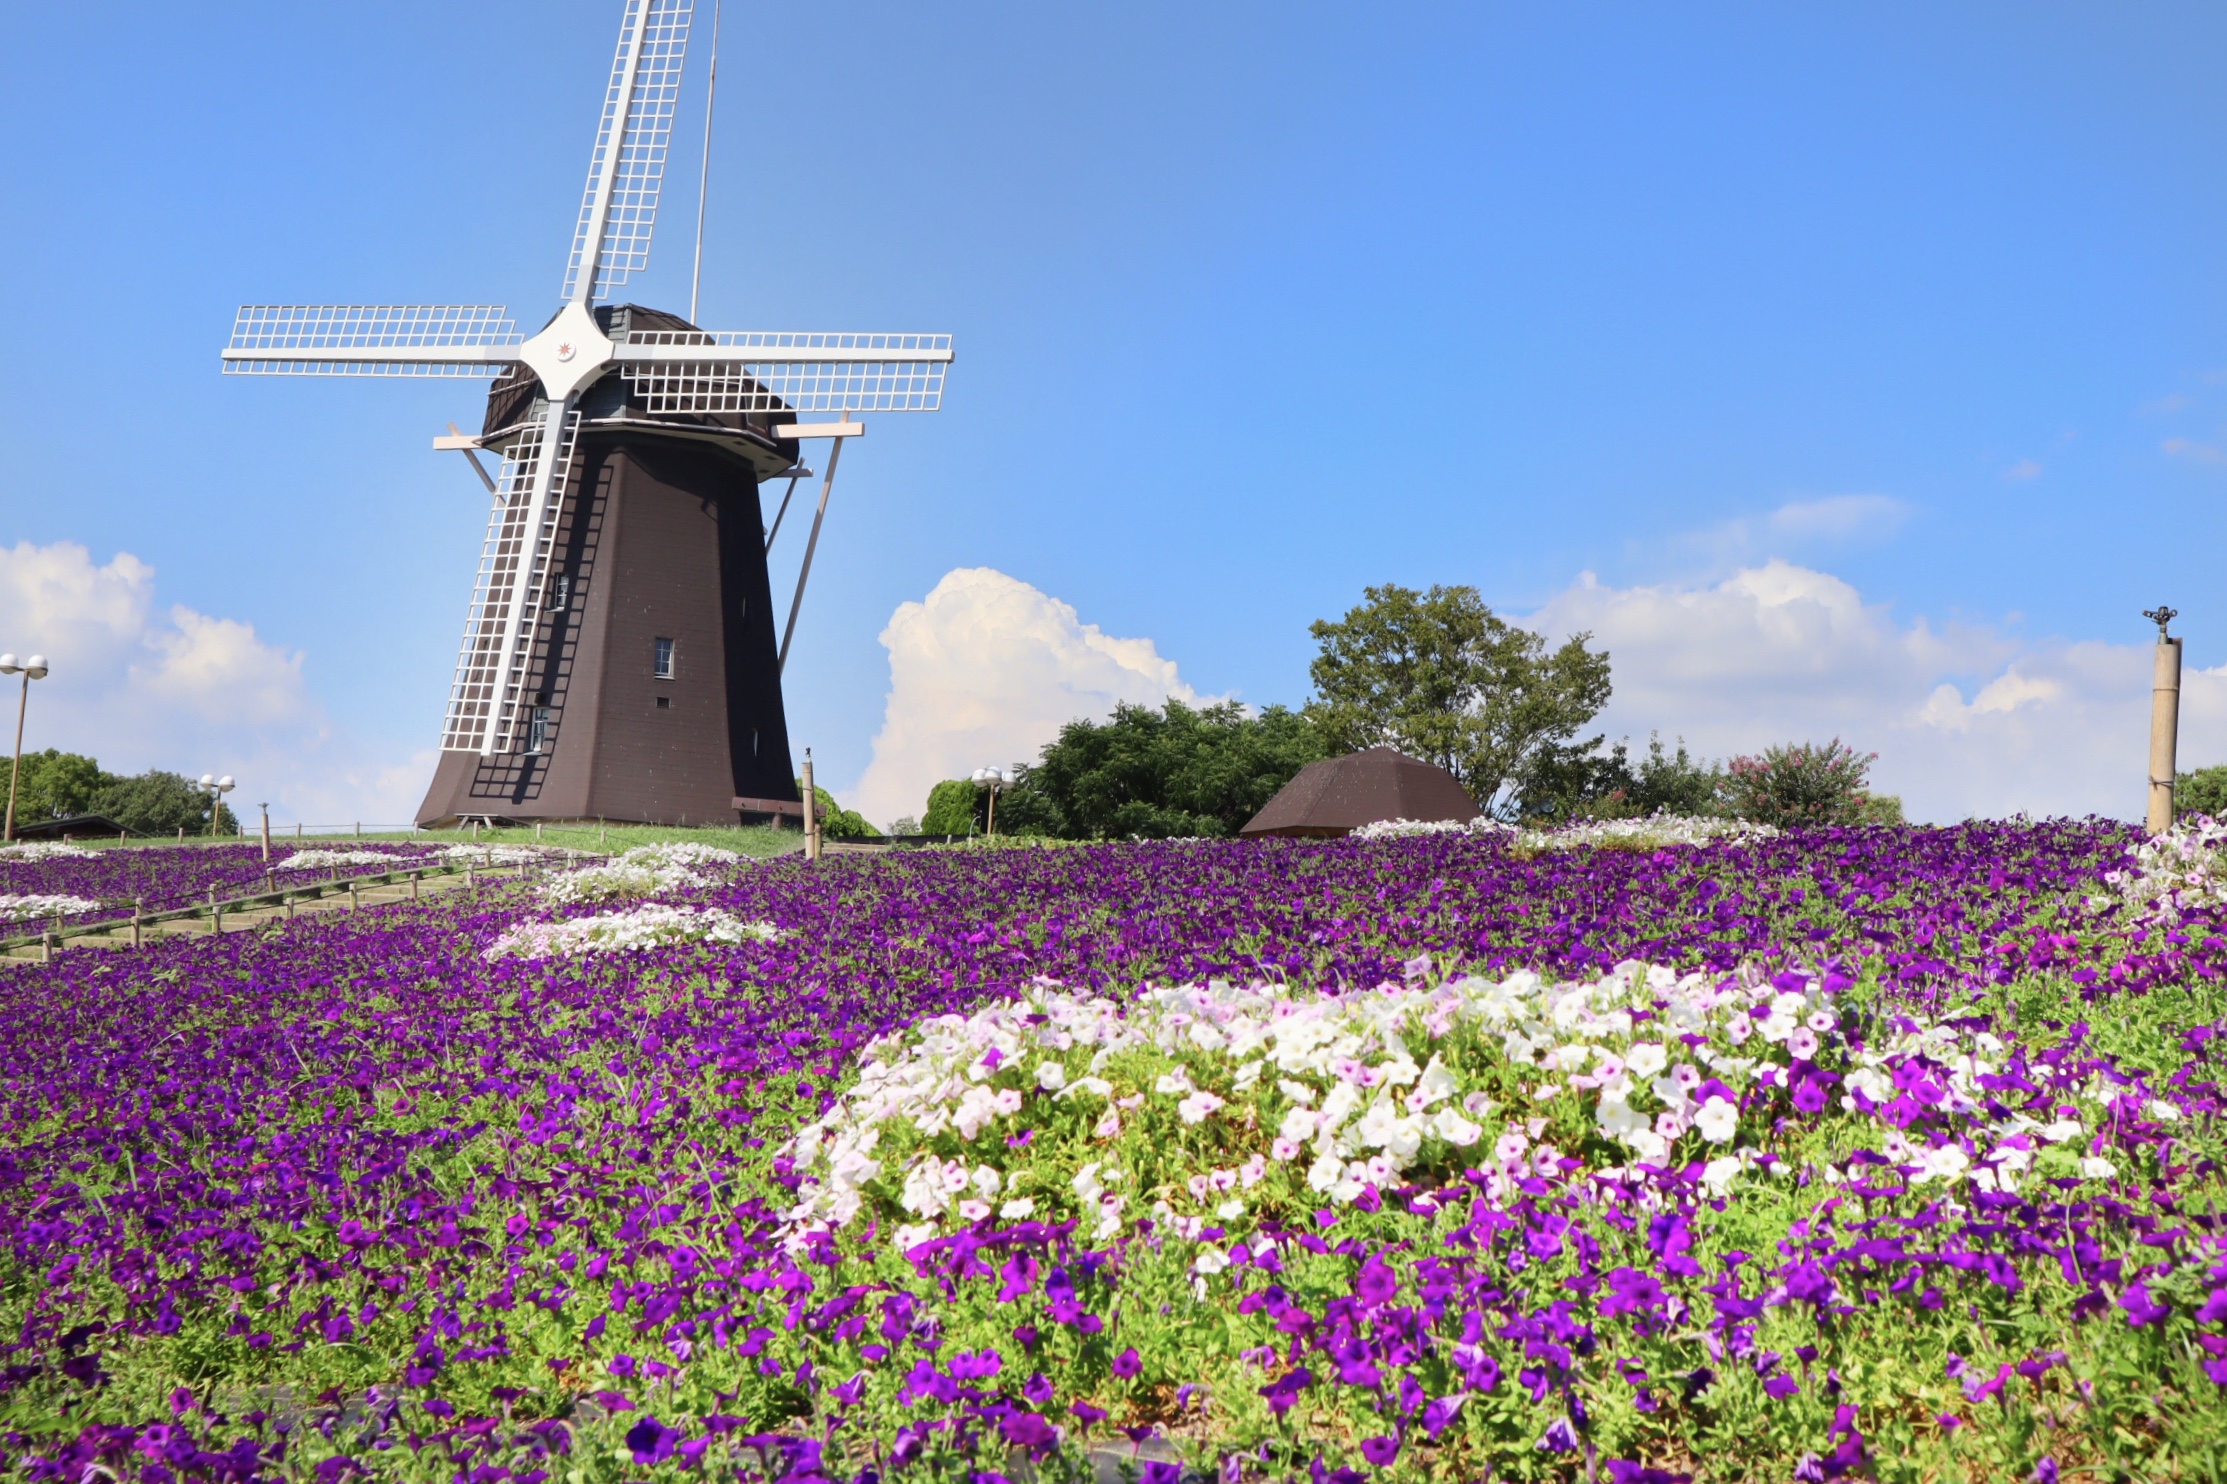 大阪鶴見緑地公園の風車とペチュニアの花の紫の絨毯